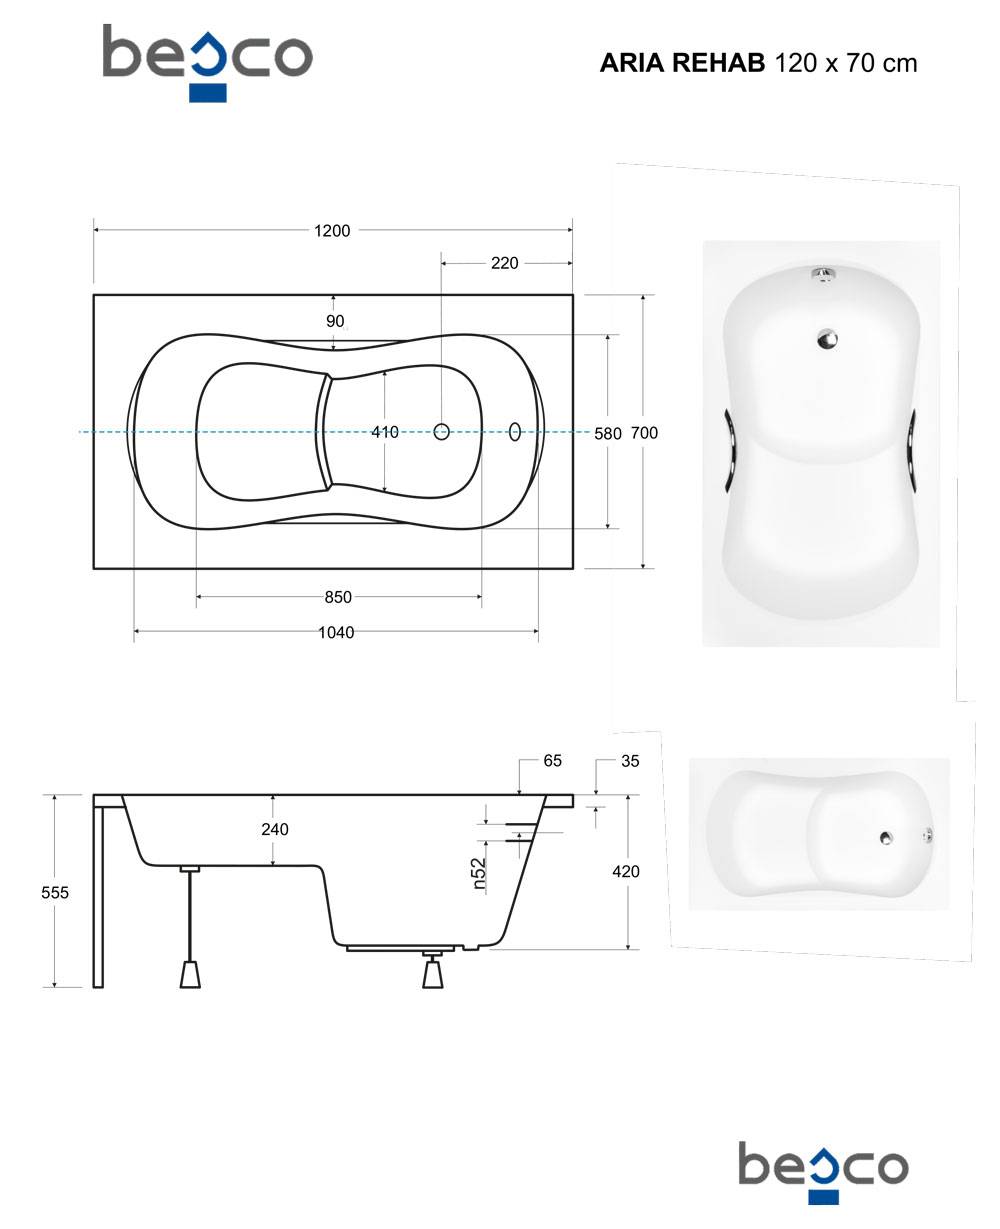 Короткие ванны: компактная мини 115х70, небольшие размеры и самая маленькая, капелька и квадратная малогабаритная
виды коротких ванн и 8 форм – дизайн интерьера и ремонт квартиры своими руками